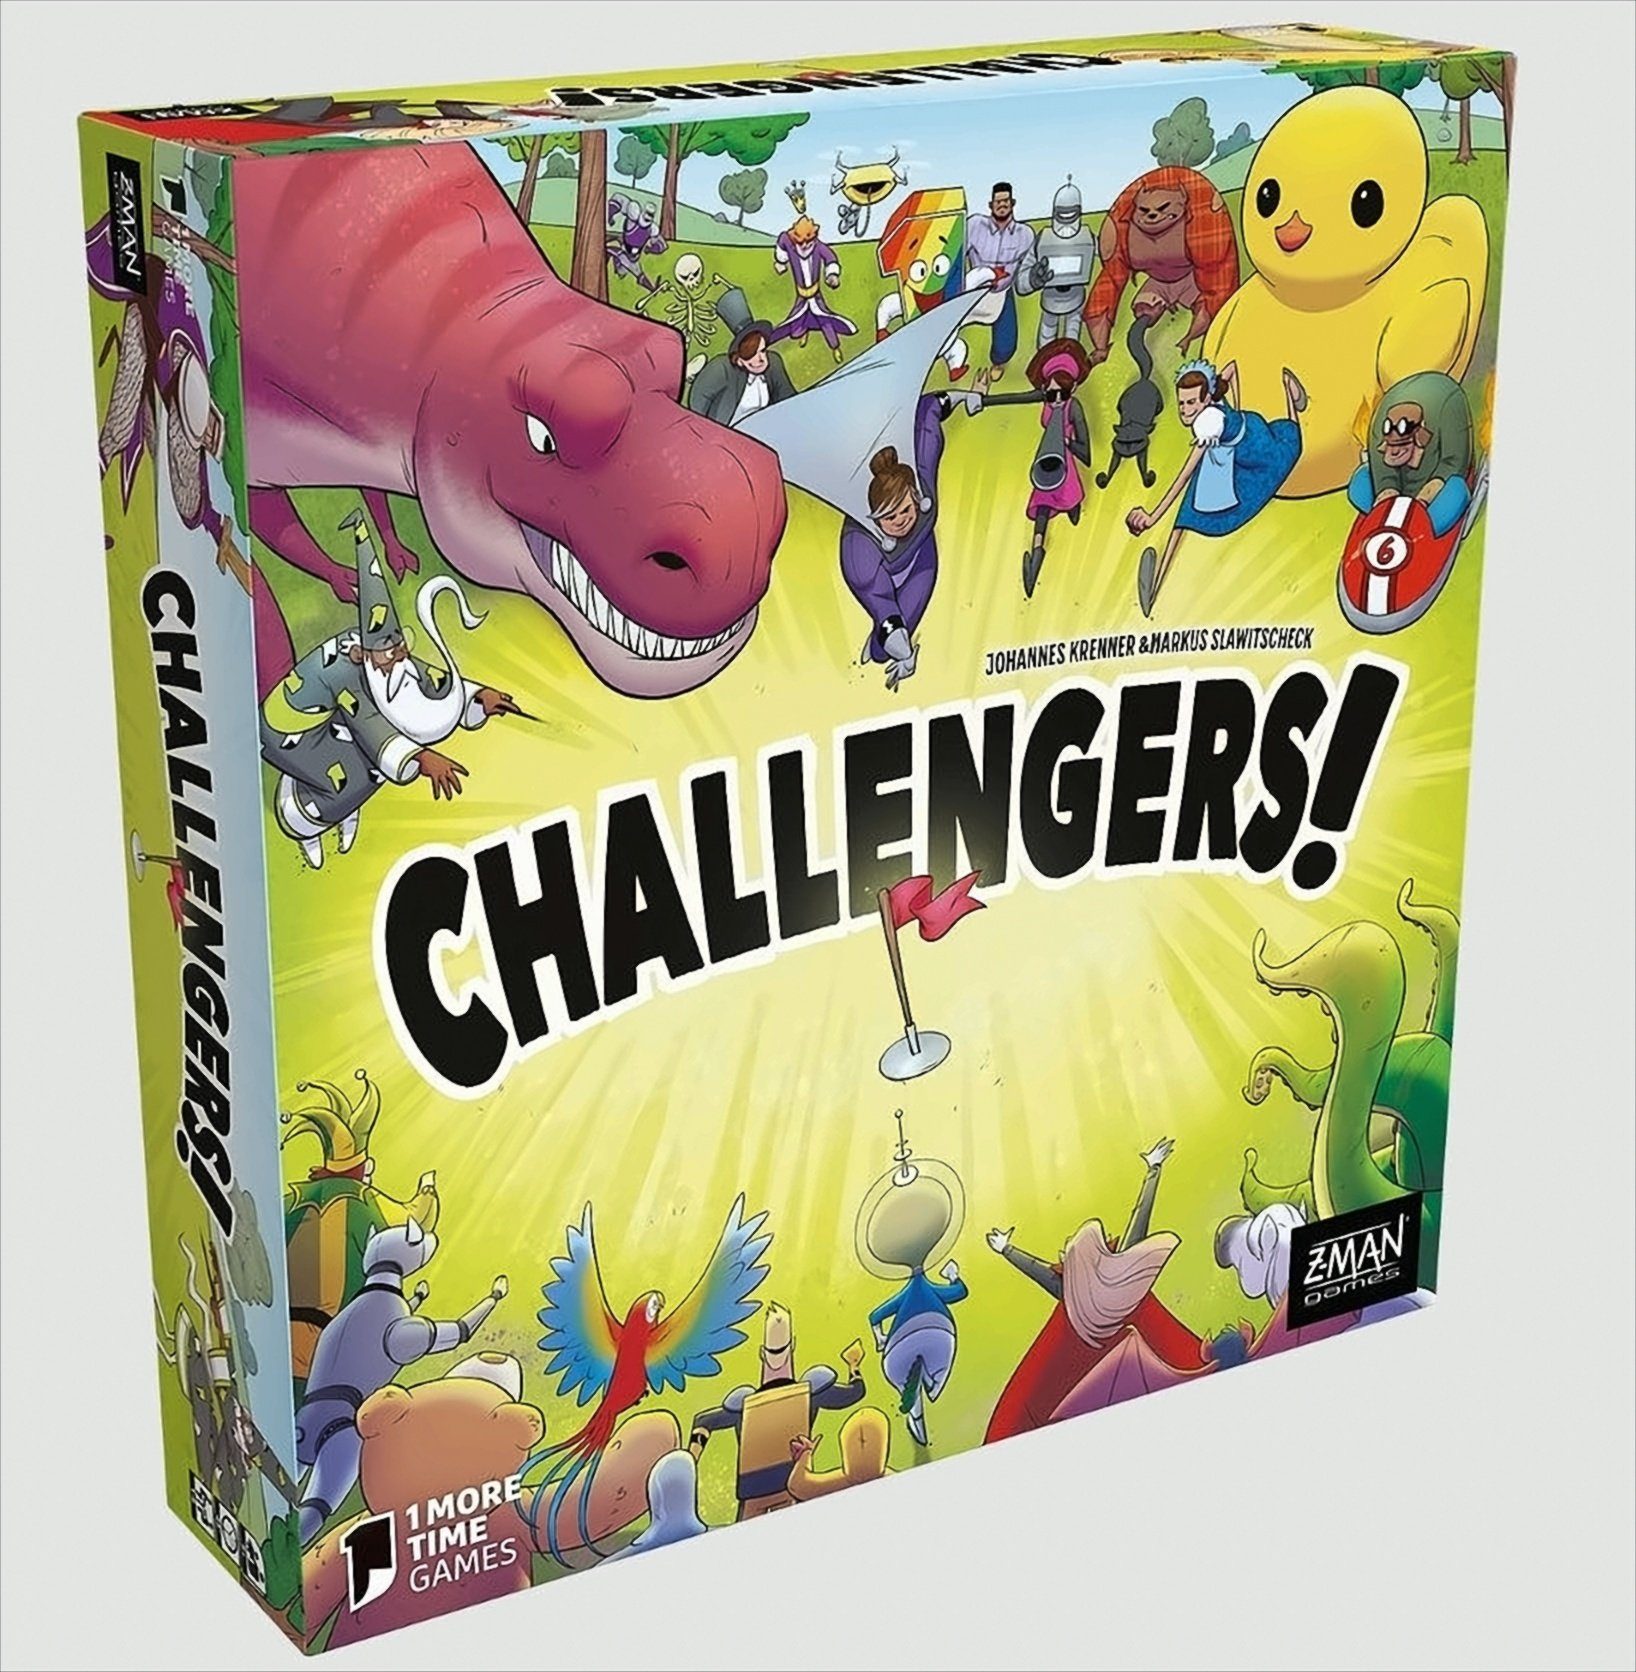 Games Z-Man Z-Man Z-Man Spiel, - Challengers! Challengers! Games - Games